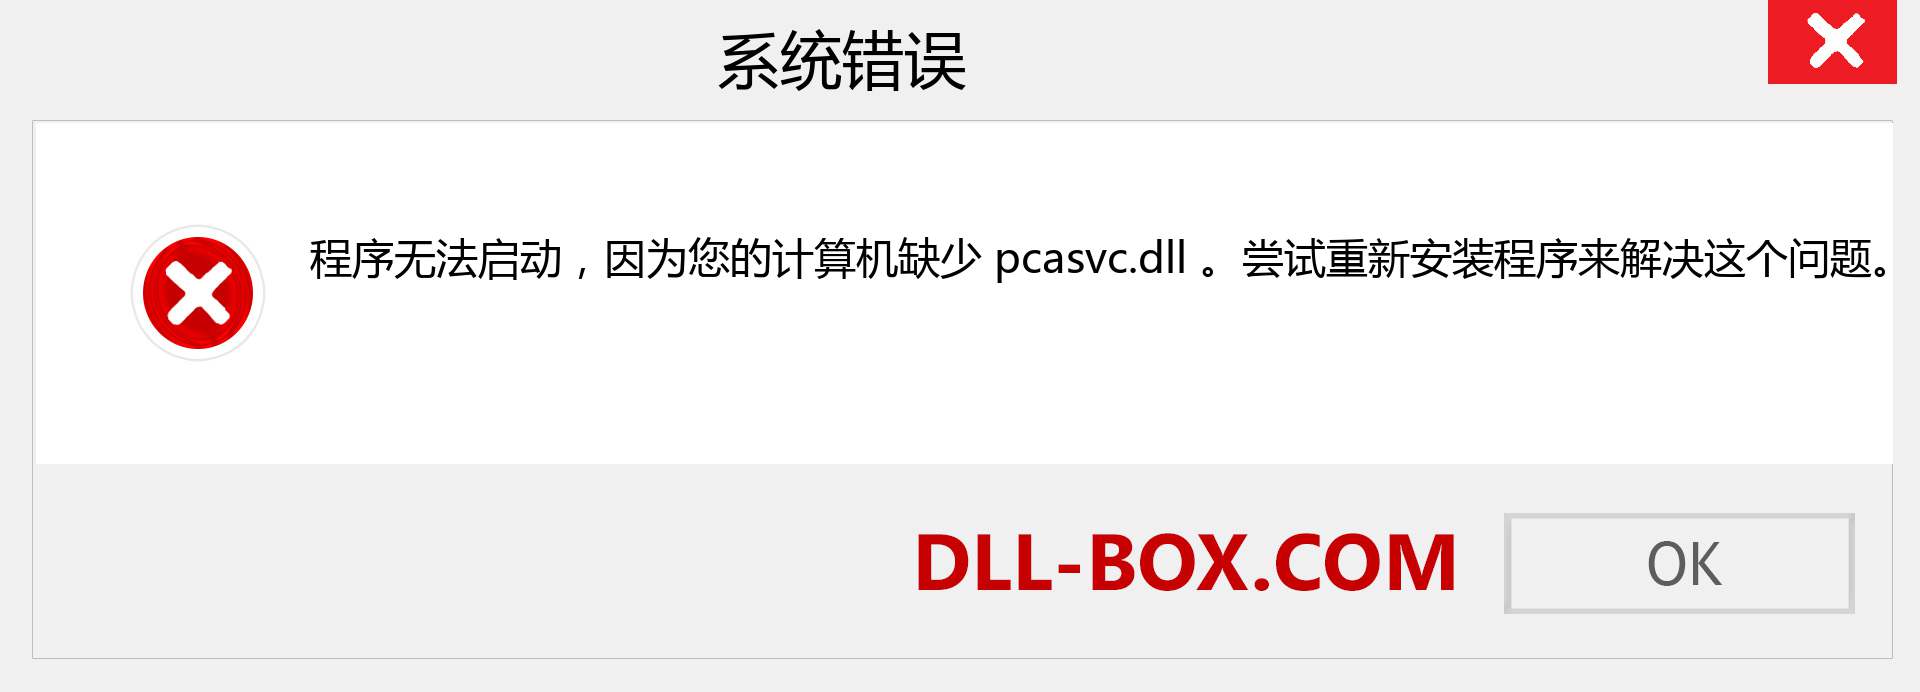 pcasvc.dll 文件丢失？。 适用于 Windows 7、8、10 的下载 - 修复 Windows、照片、图像上的 pcasvc dll 丢失错误